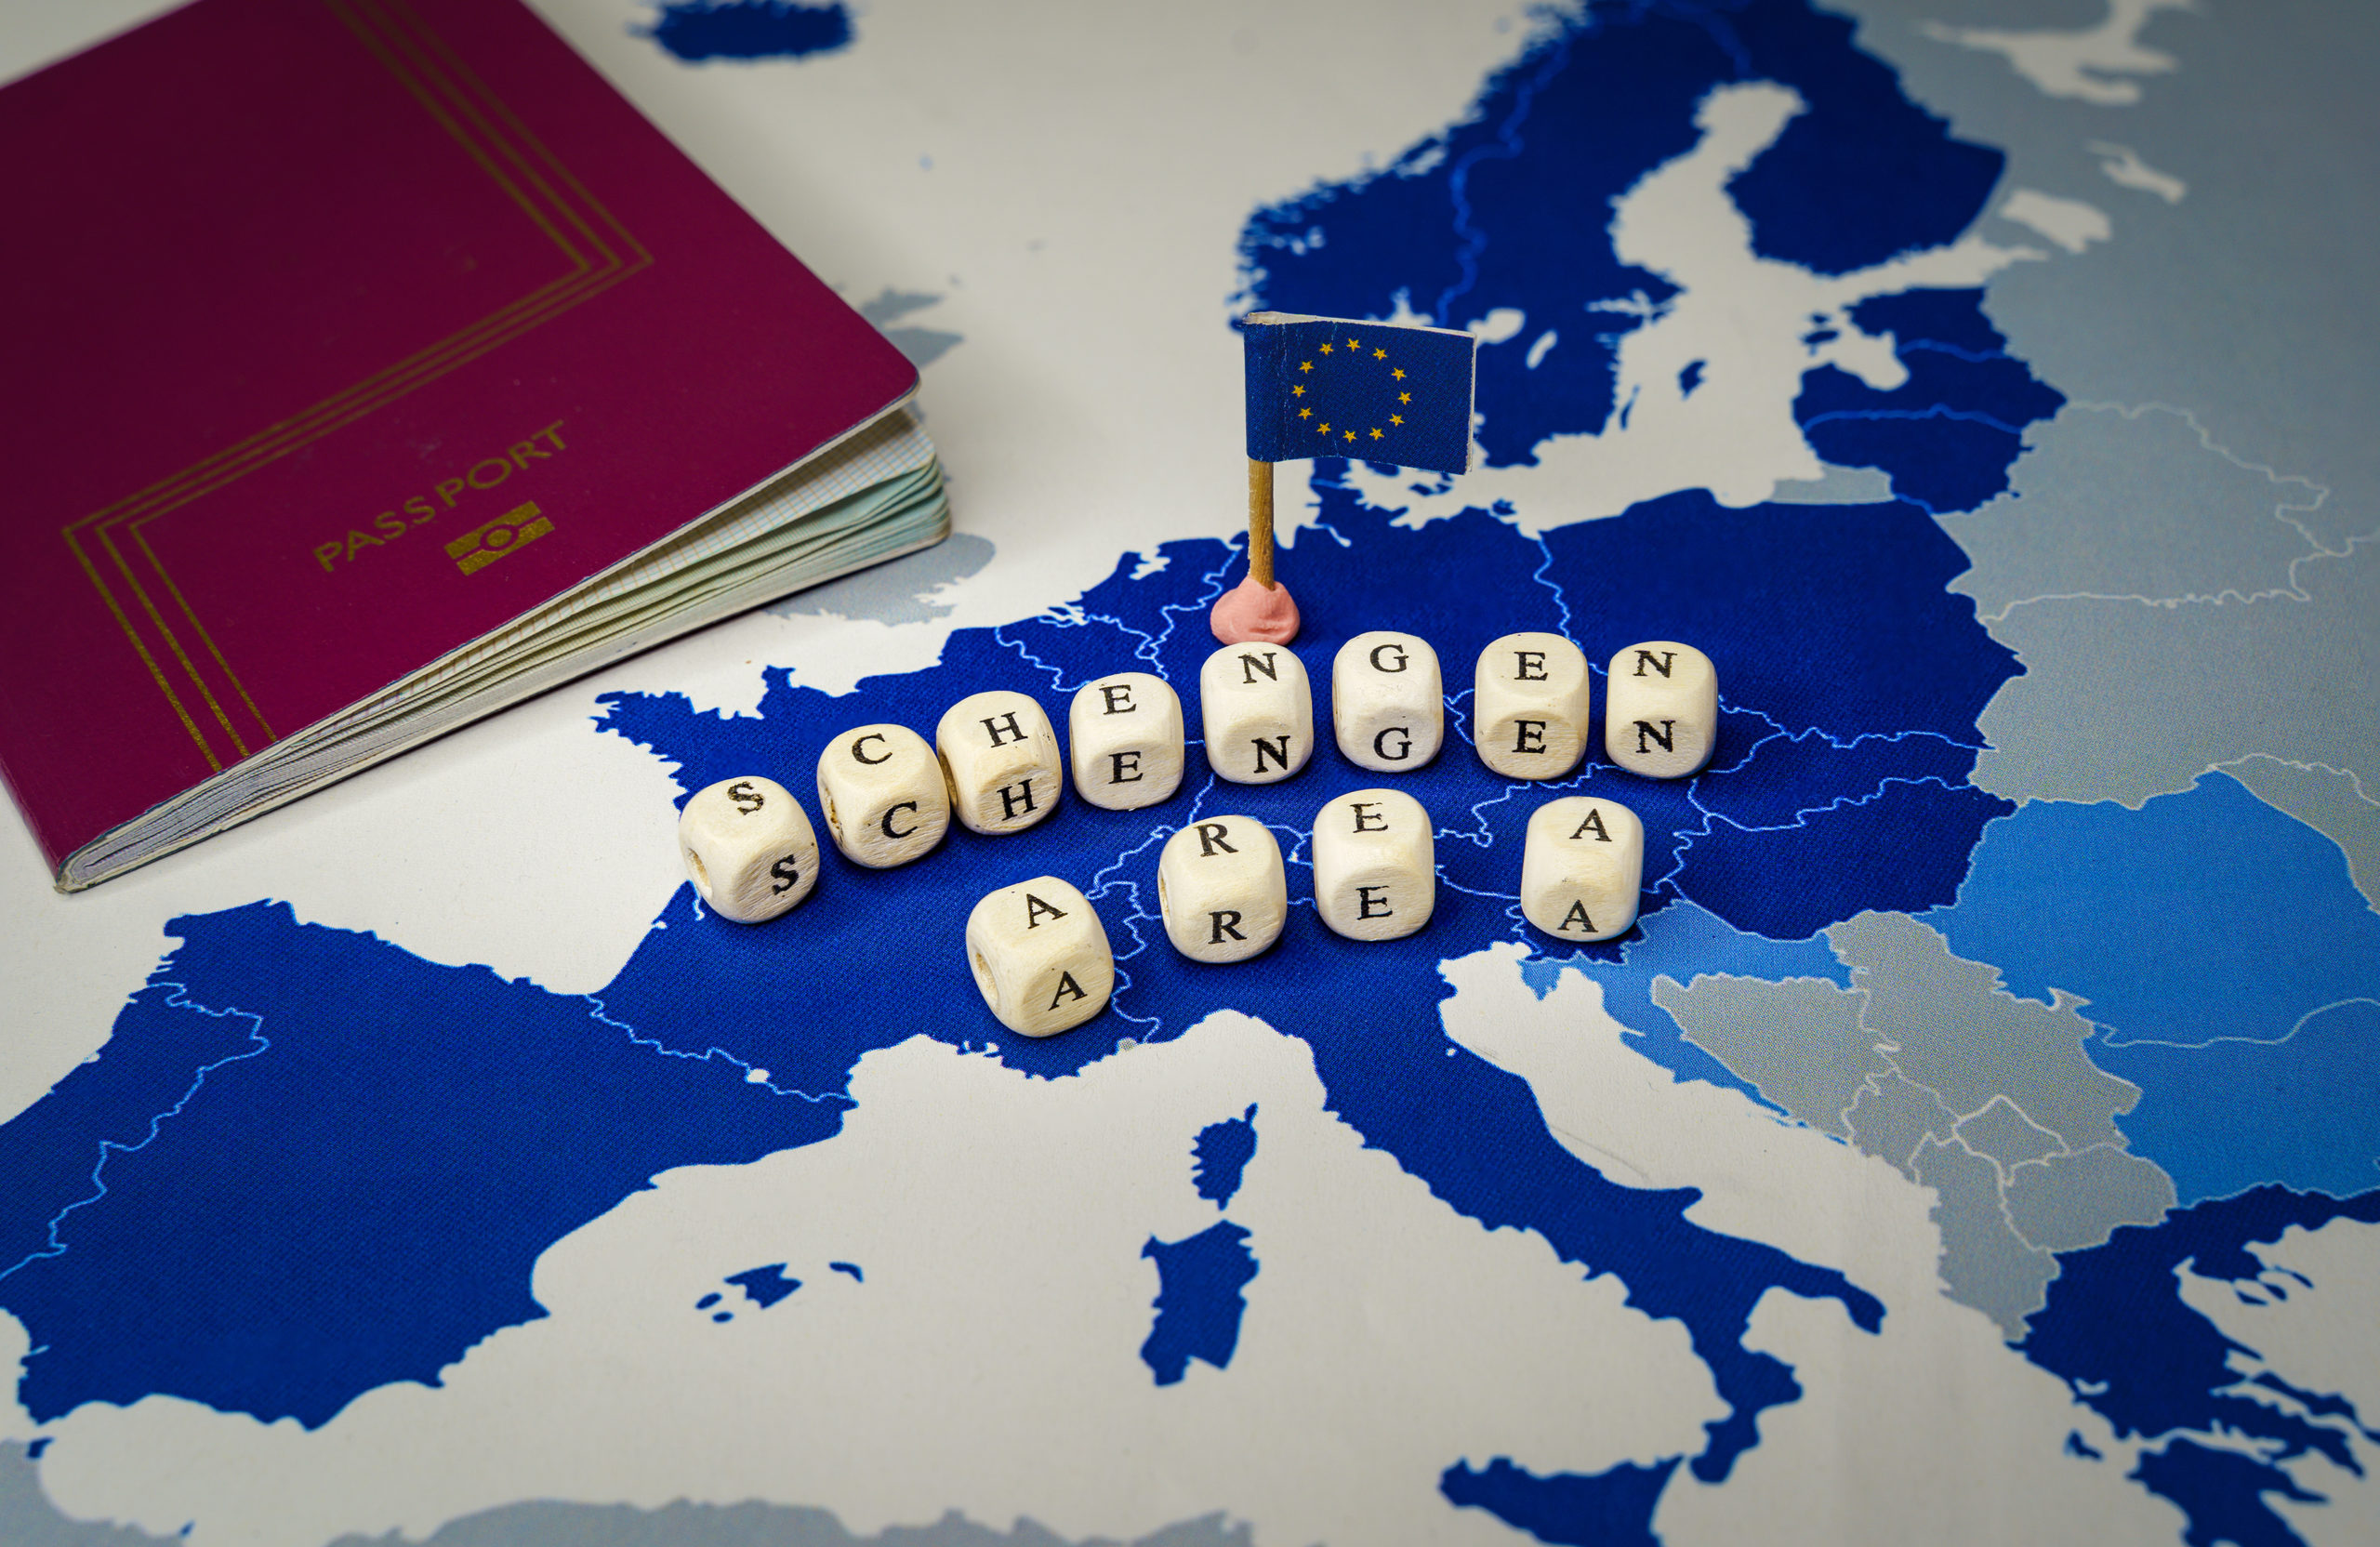 ETIAS travel authorisation scheme to launch next year